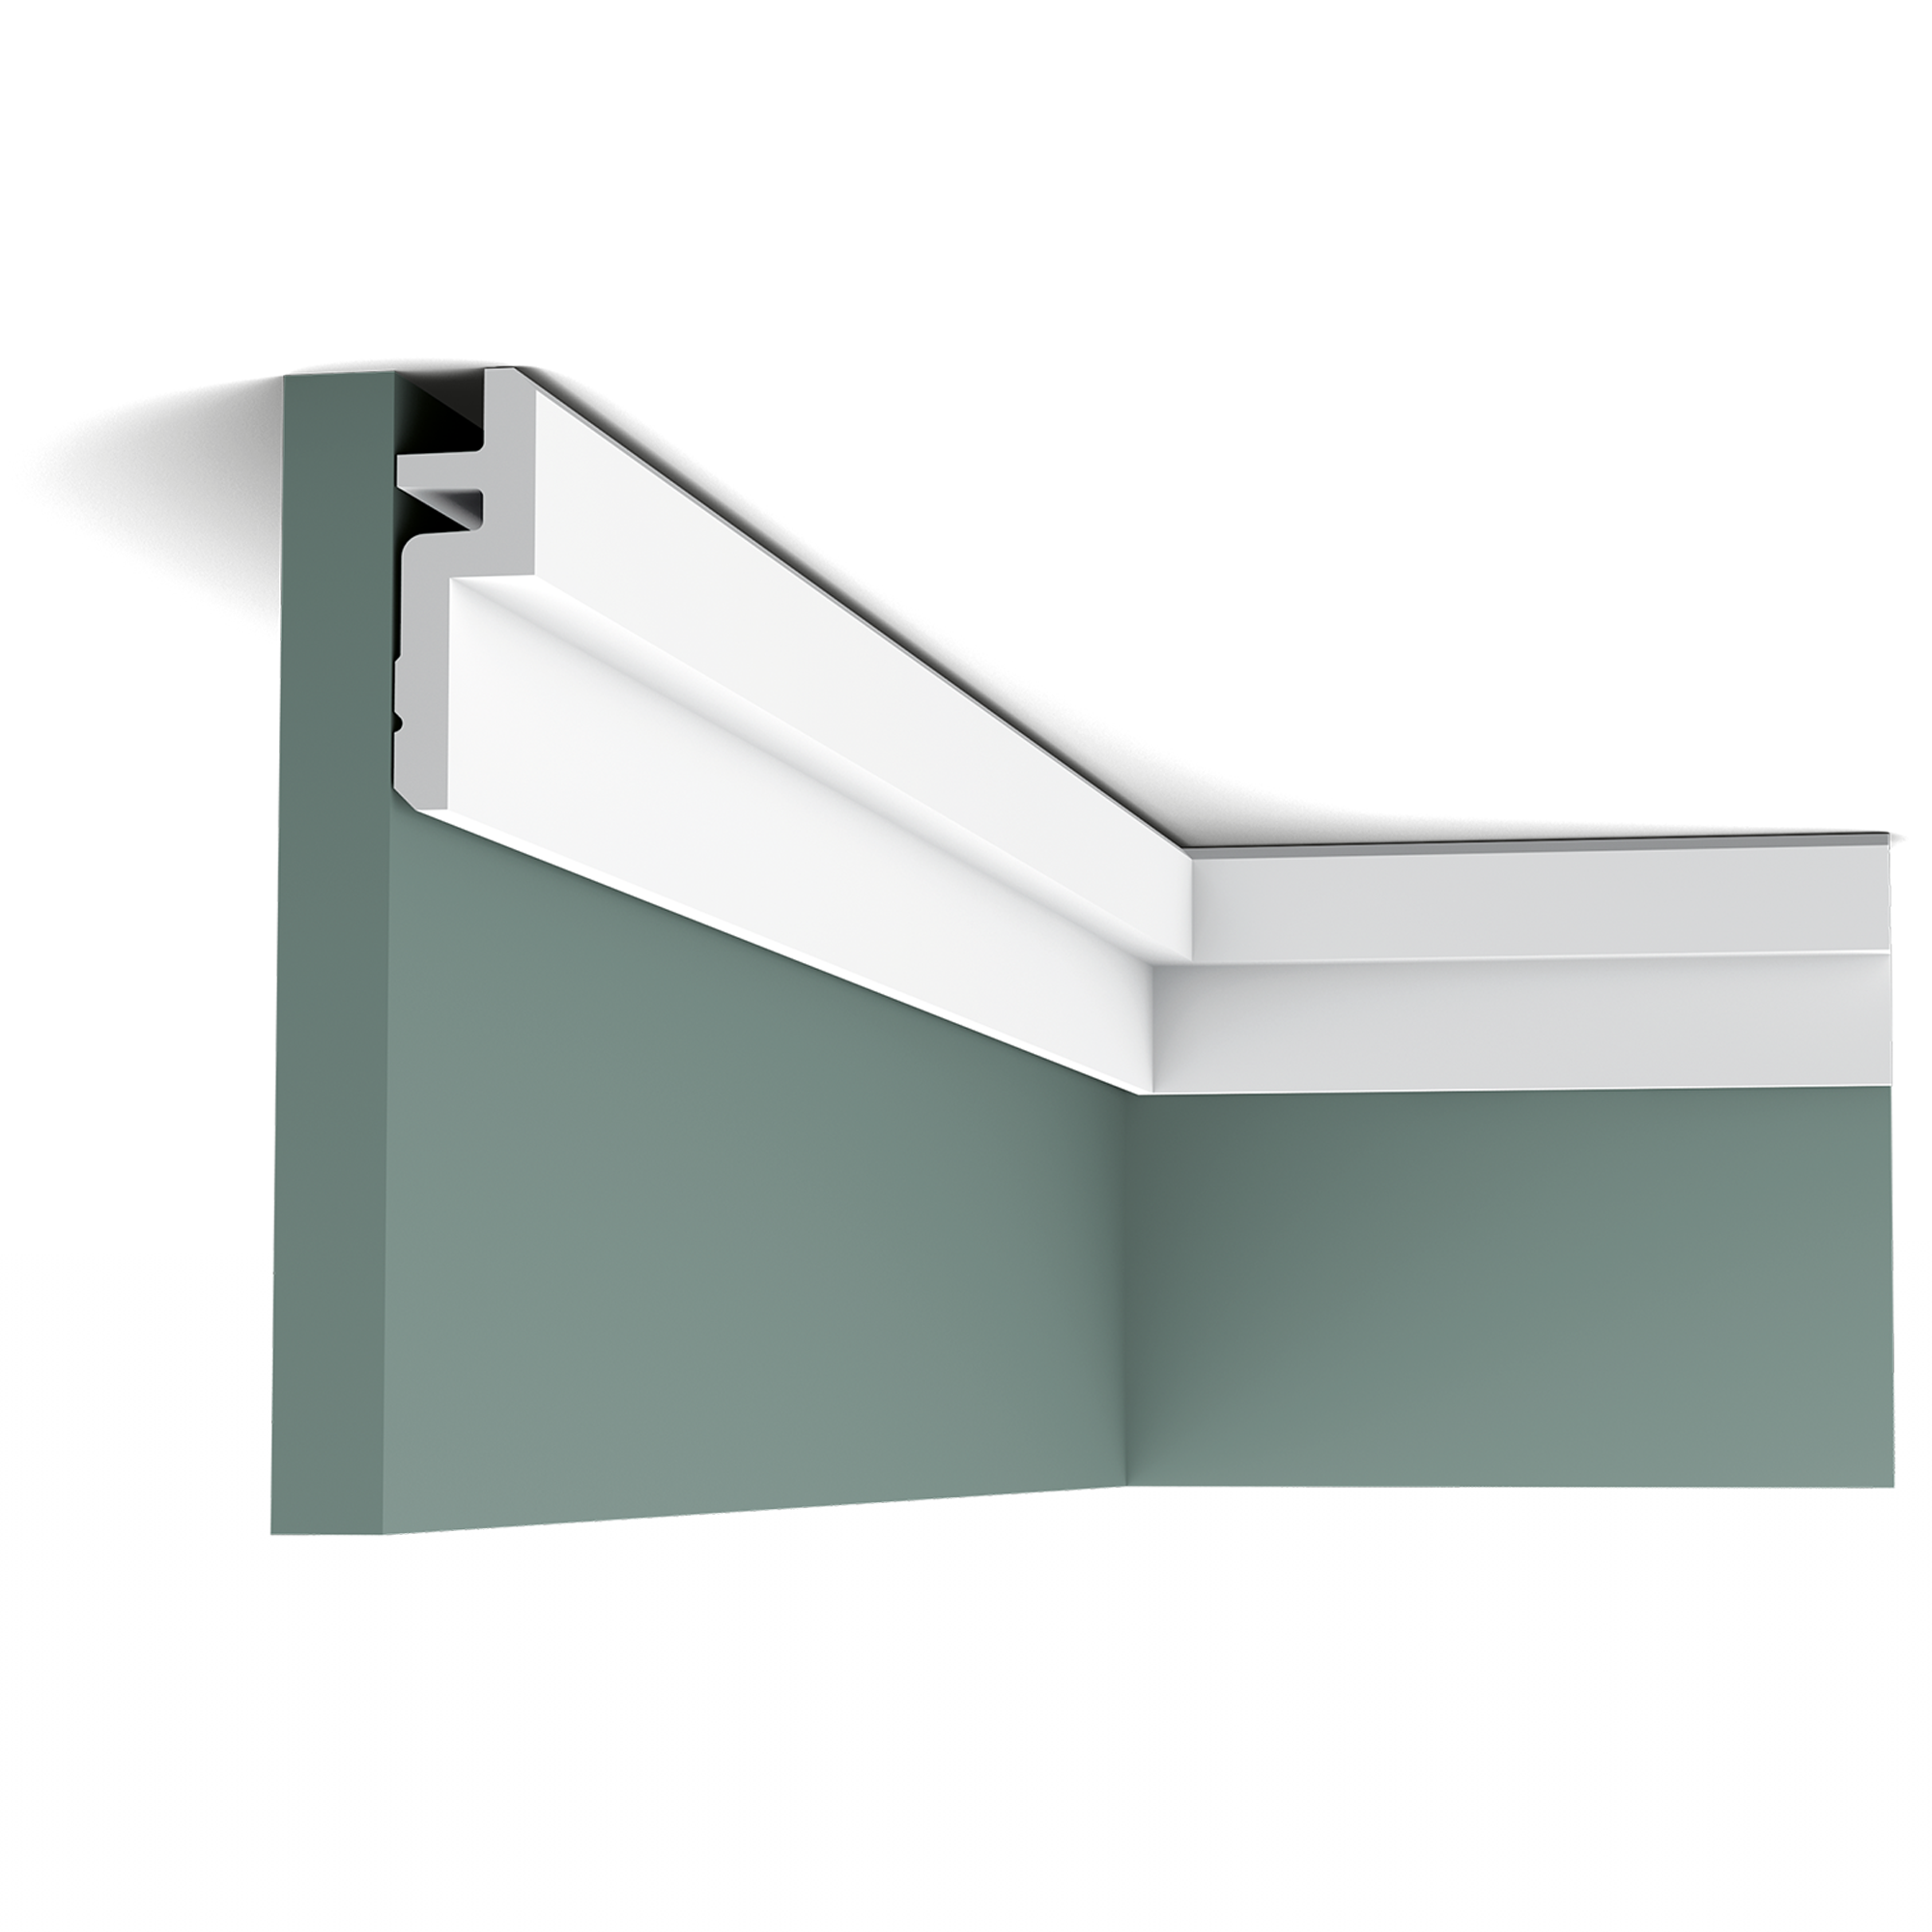 Потолочный плинтус для натяжного потолка или пвх вставка: советы по выбору, технология монтажа